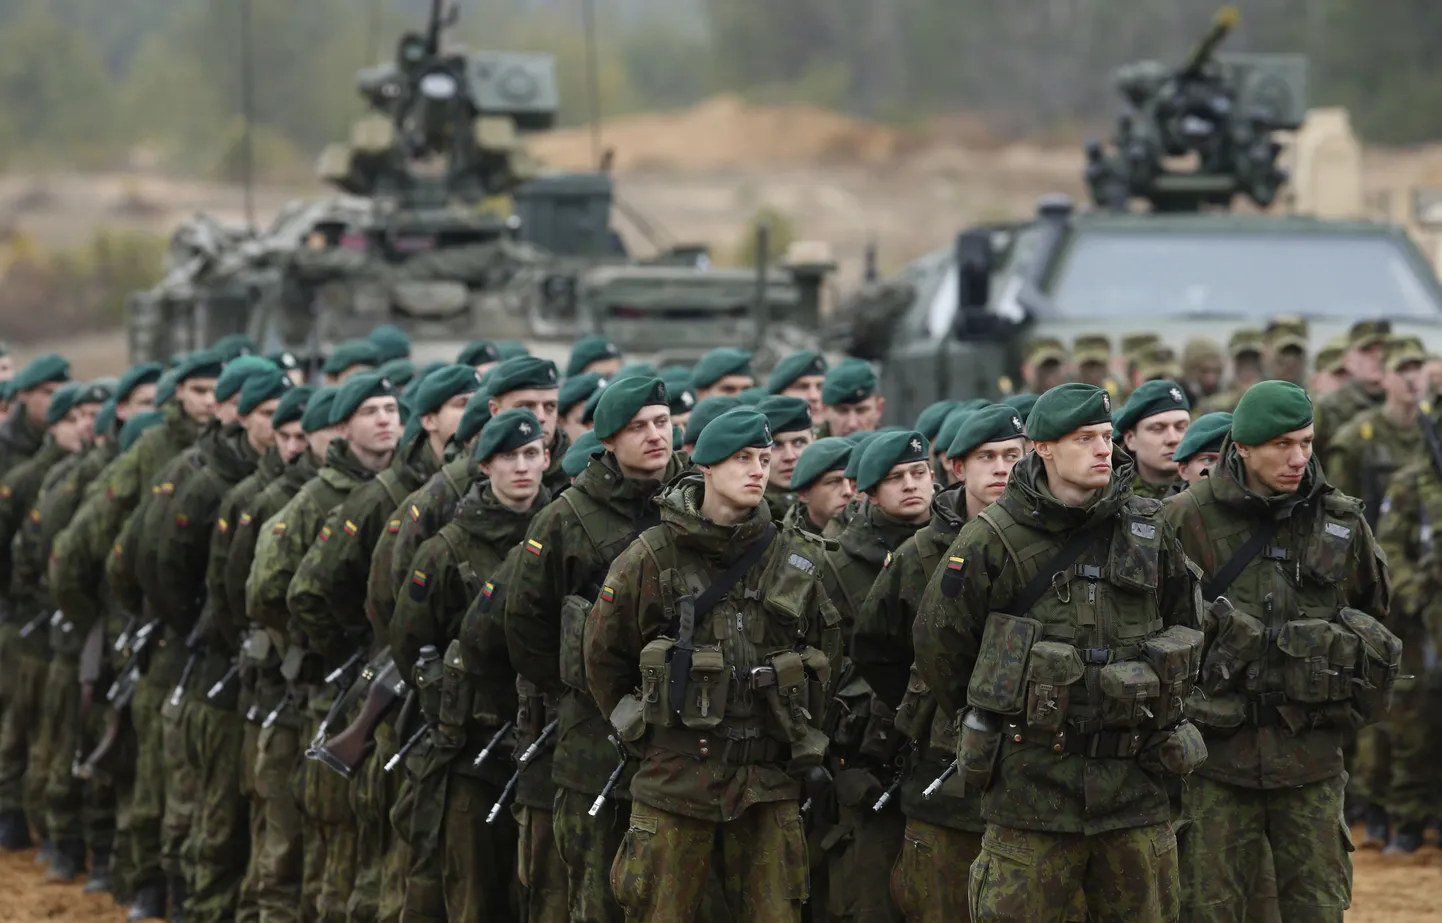 Leedu sõdurid